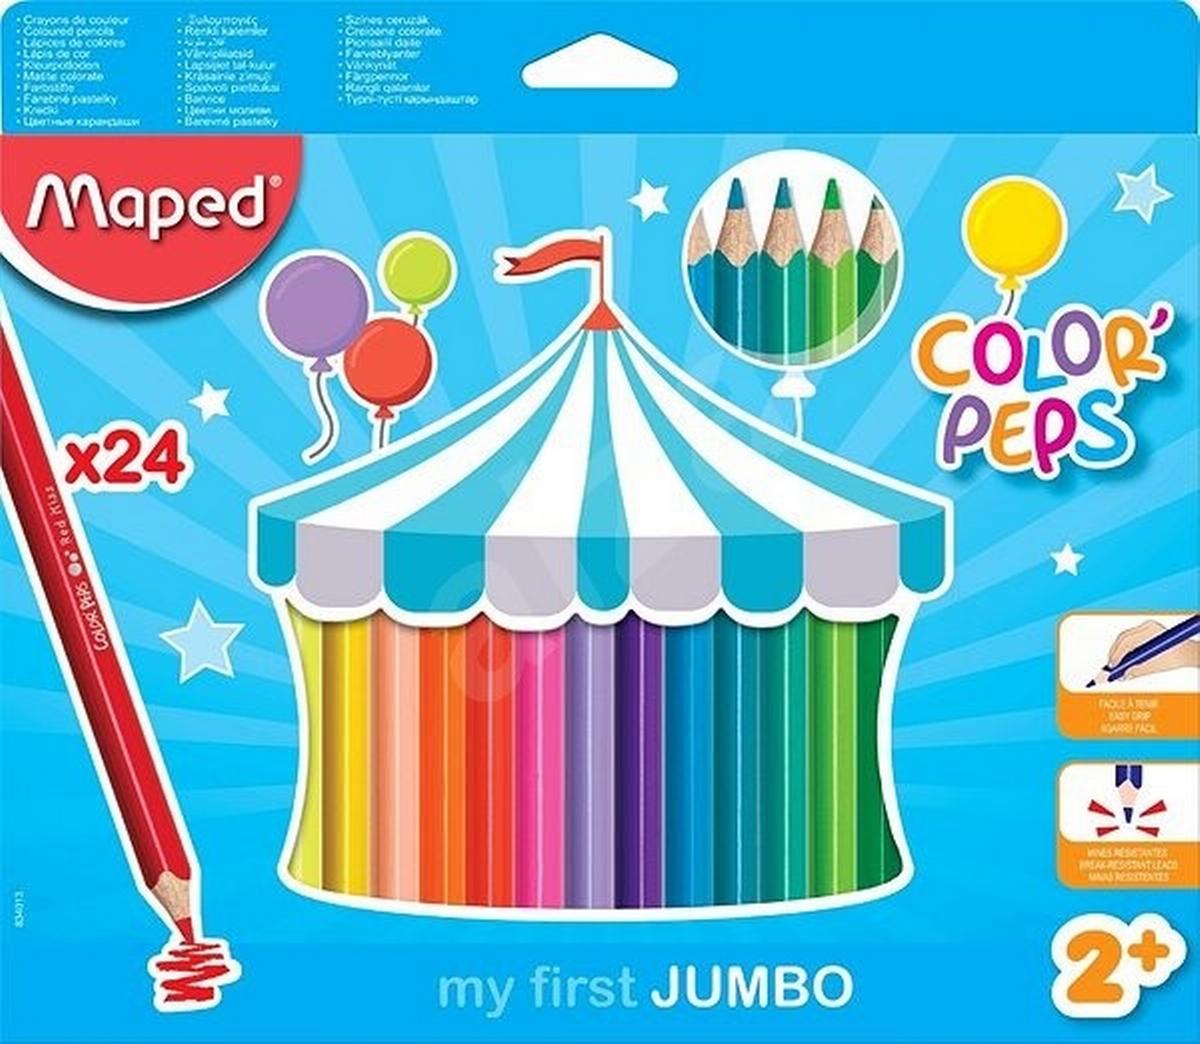 Χρωματιστά μολύβια ColorPeps Jumbo 18 τεμαχίων